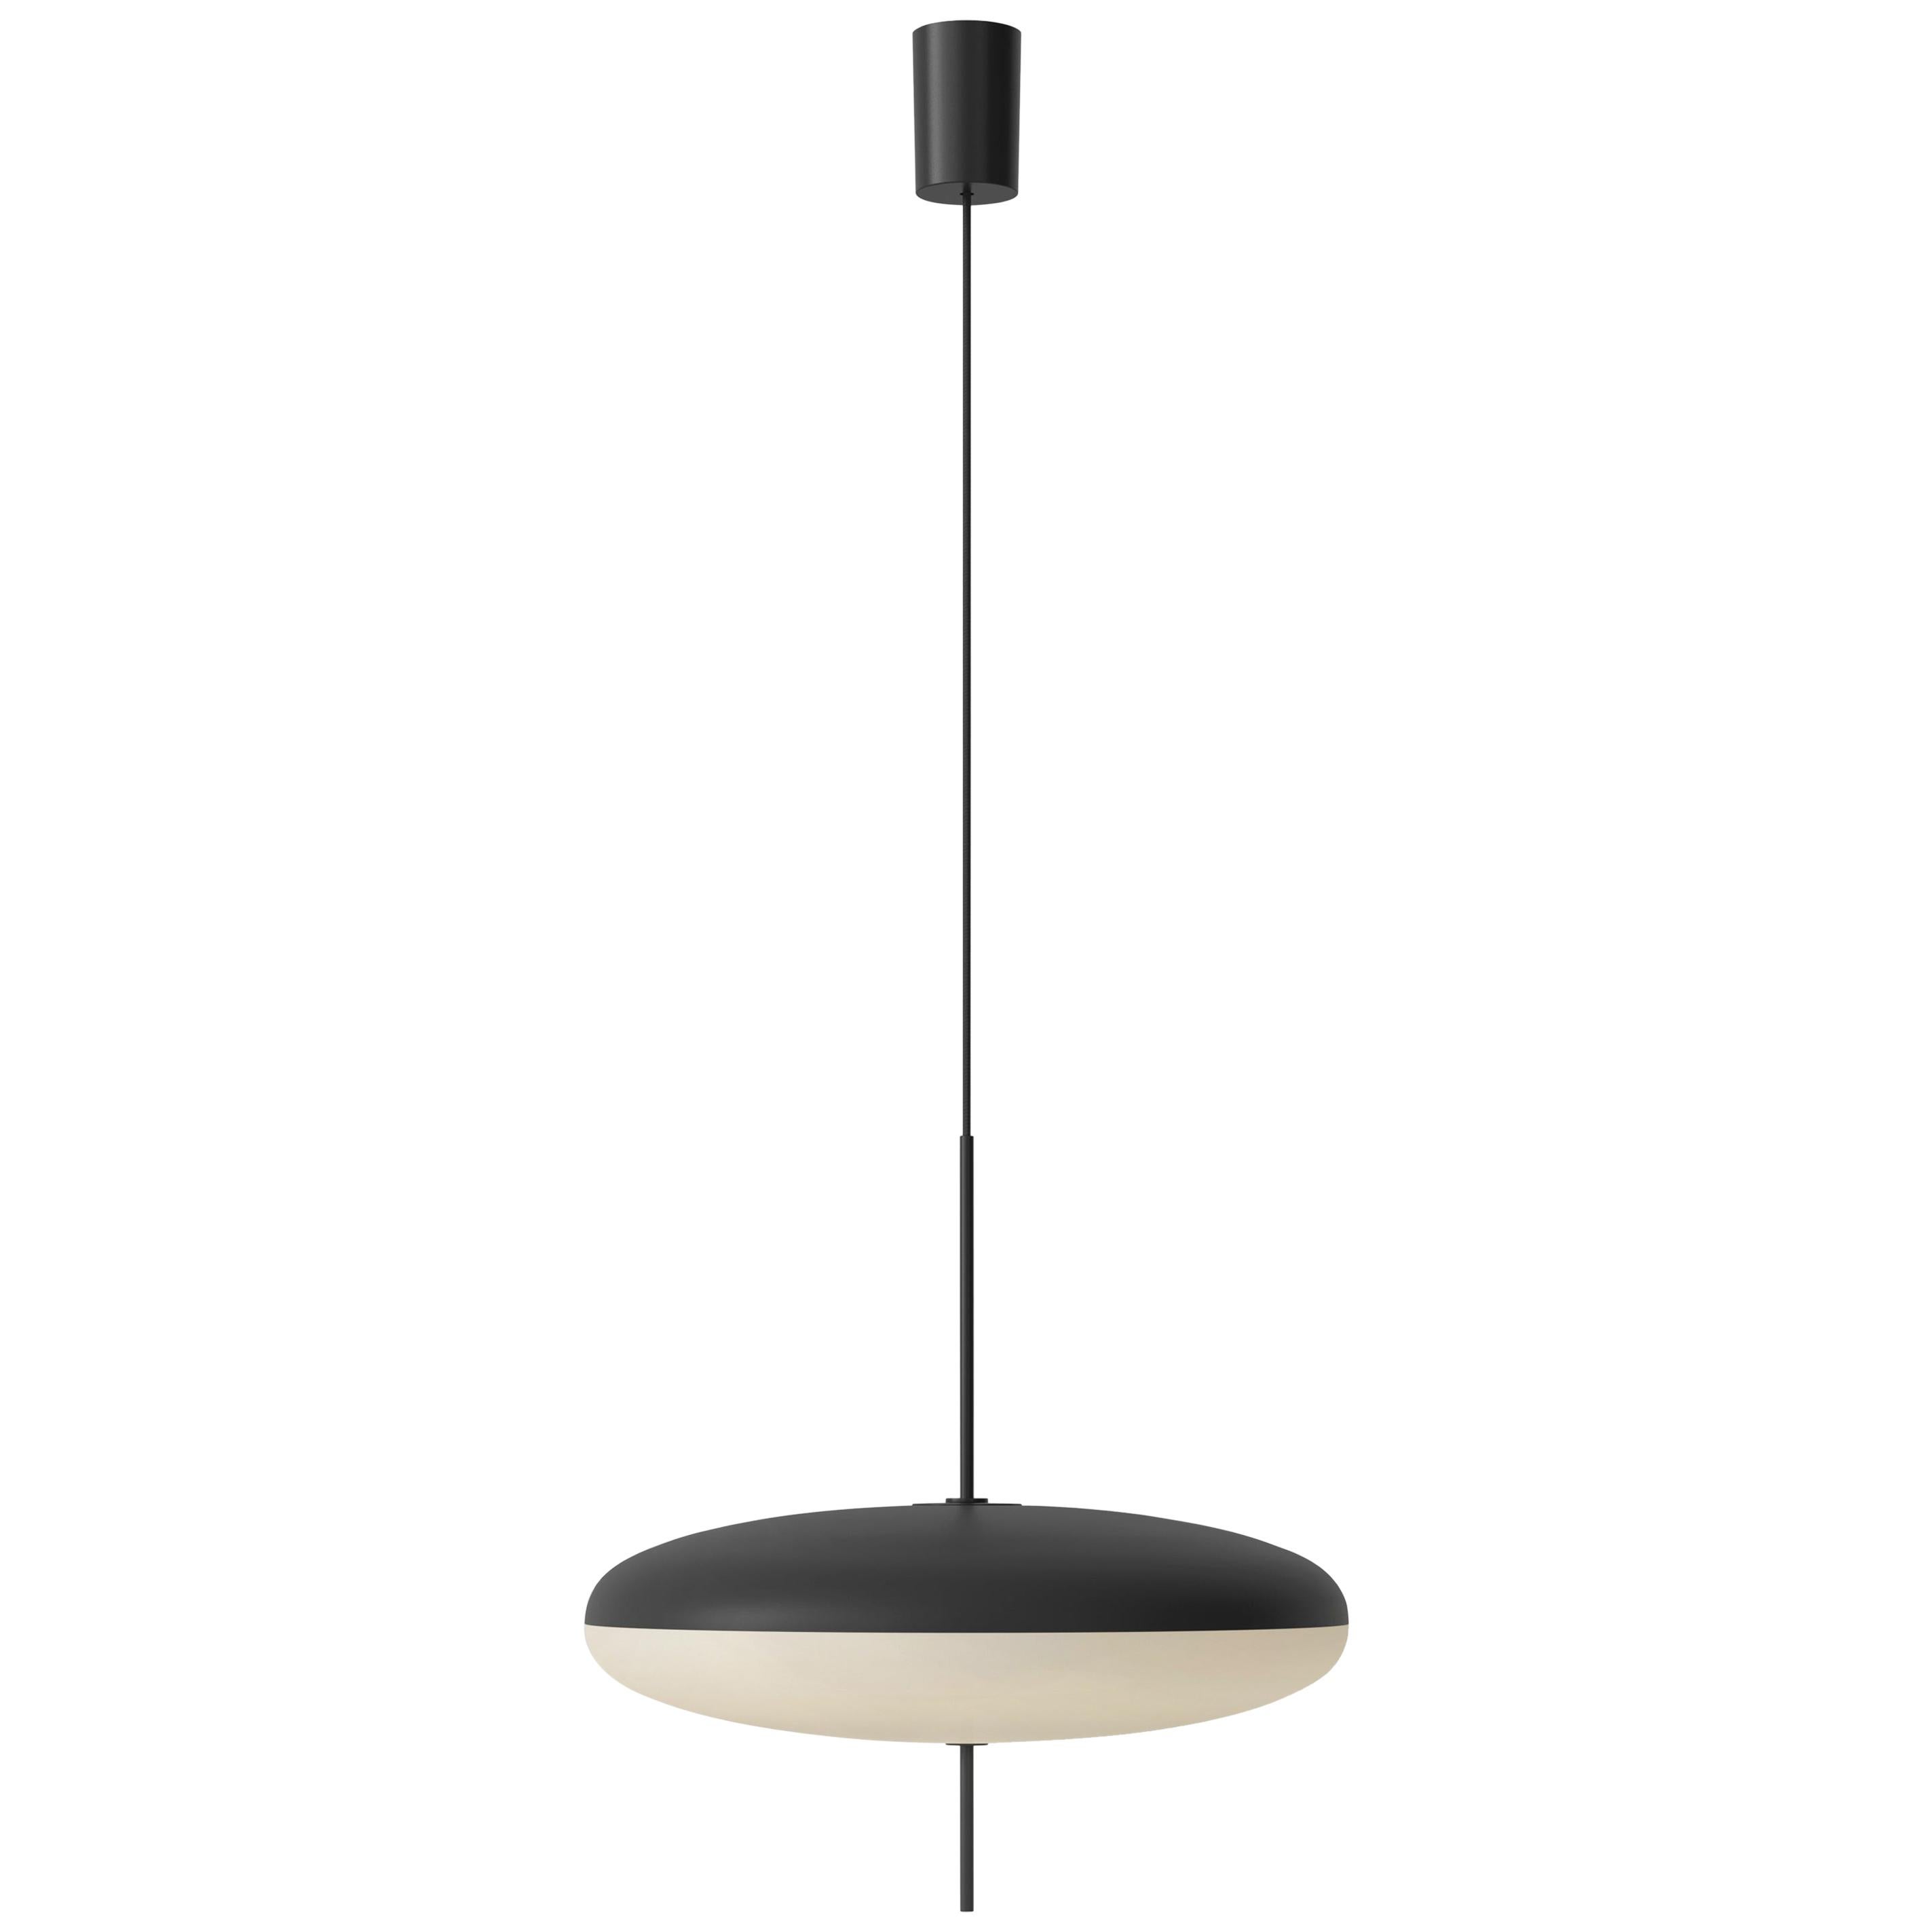 Gino Sarfatti-Lampe, Modell 2065, schwarz-weißer Diffusor, schwarze Hardware